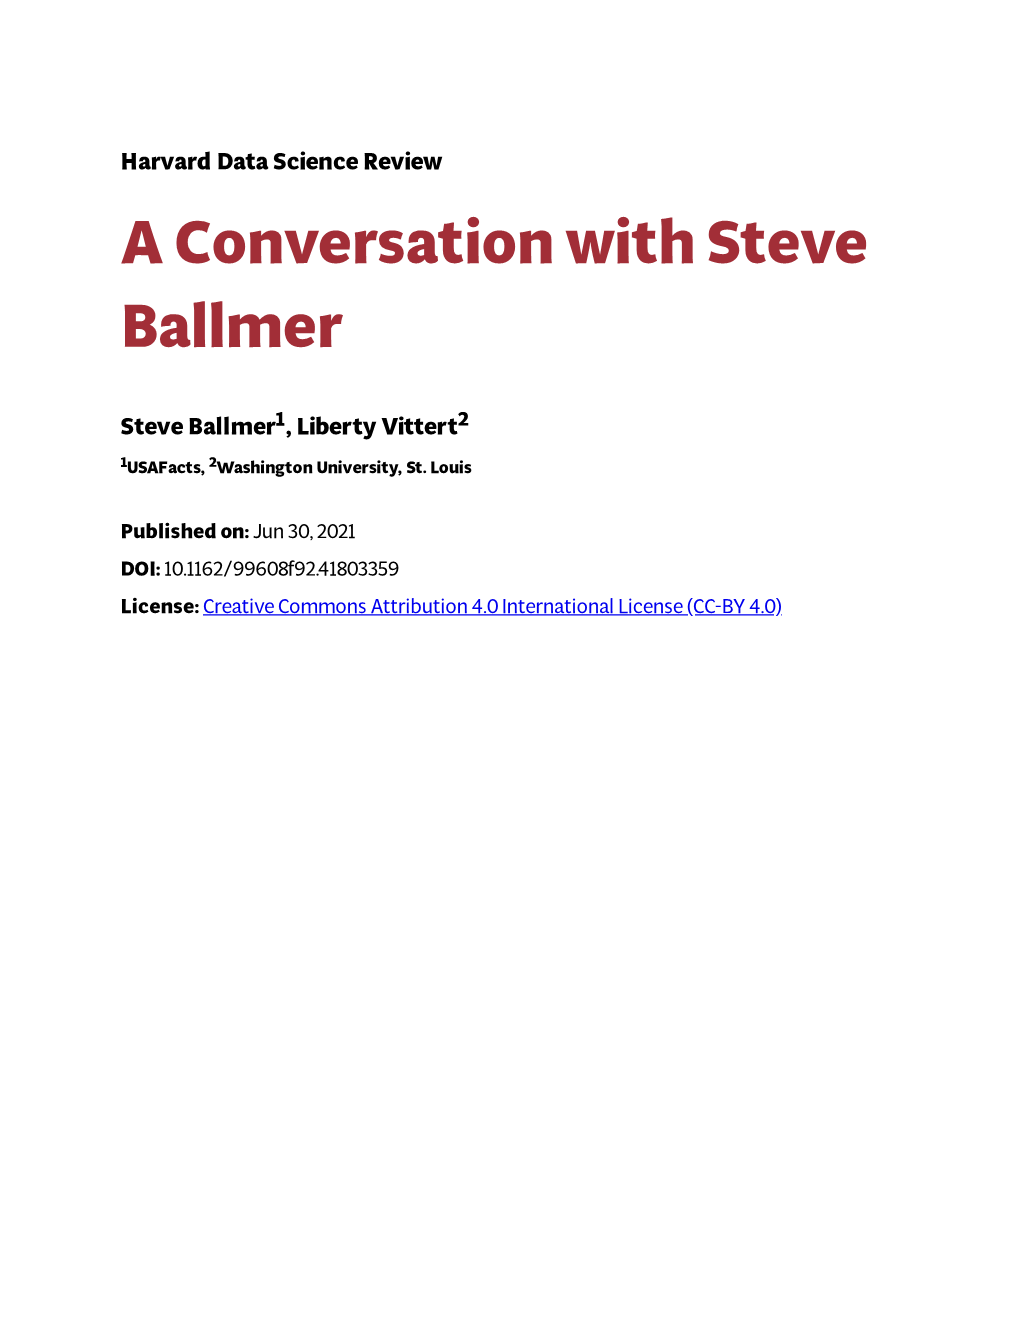 A Conversation with Steve Ballmer